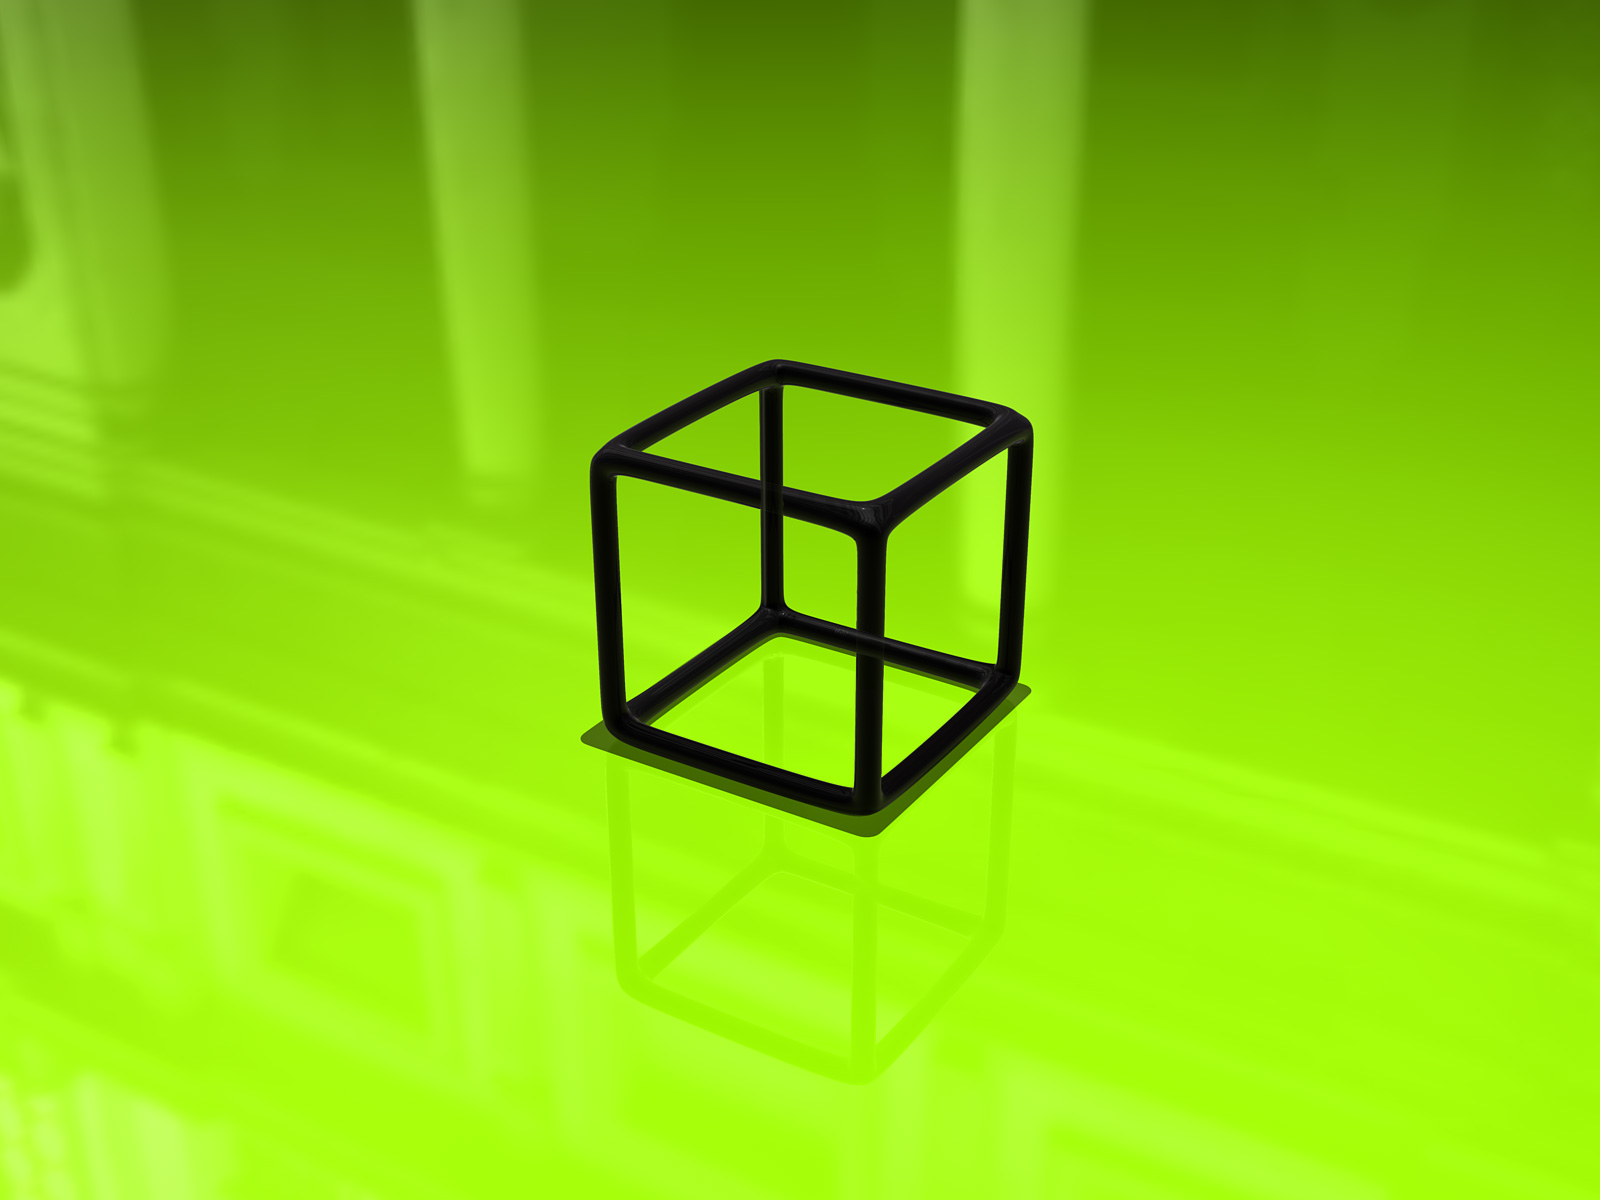 [Cube_by_BeBz.jpg]